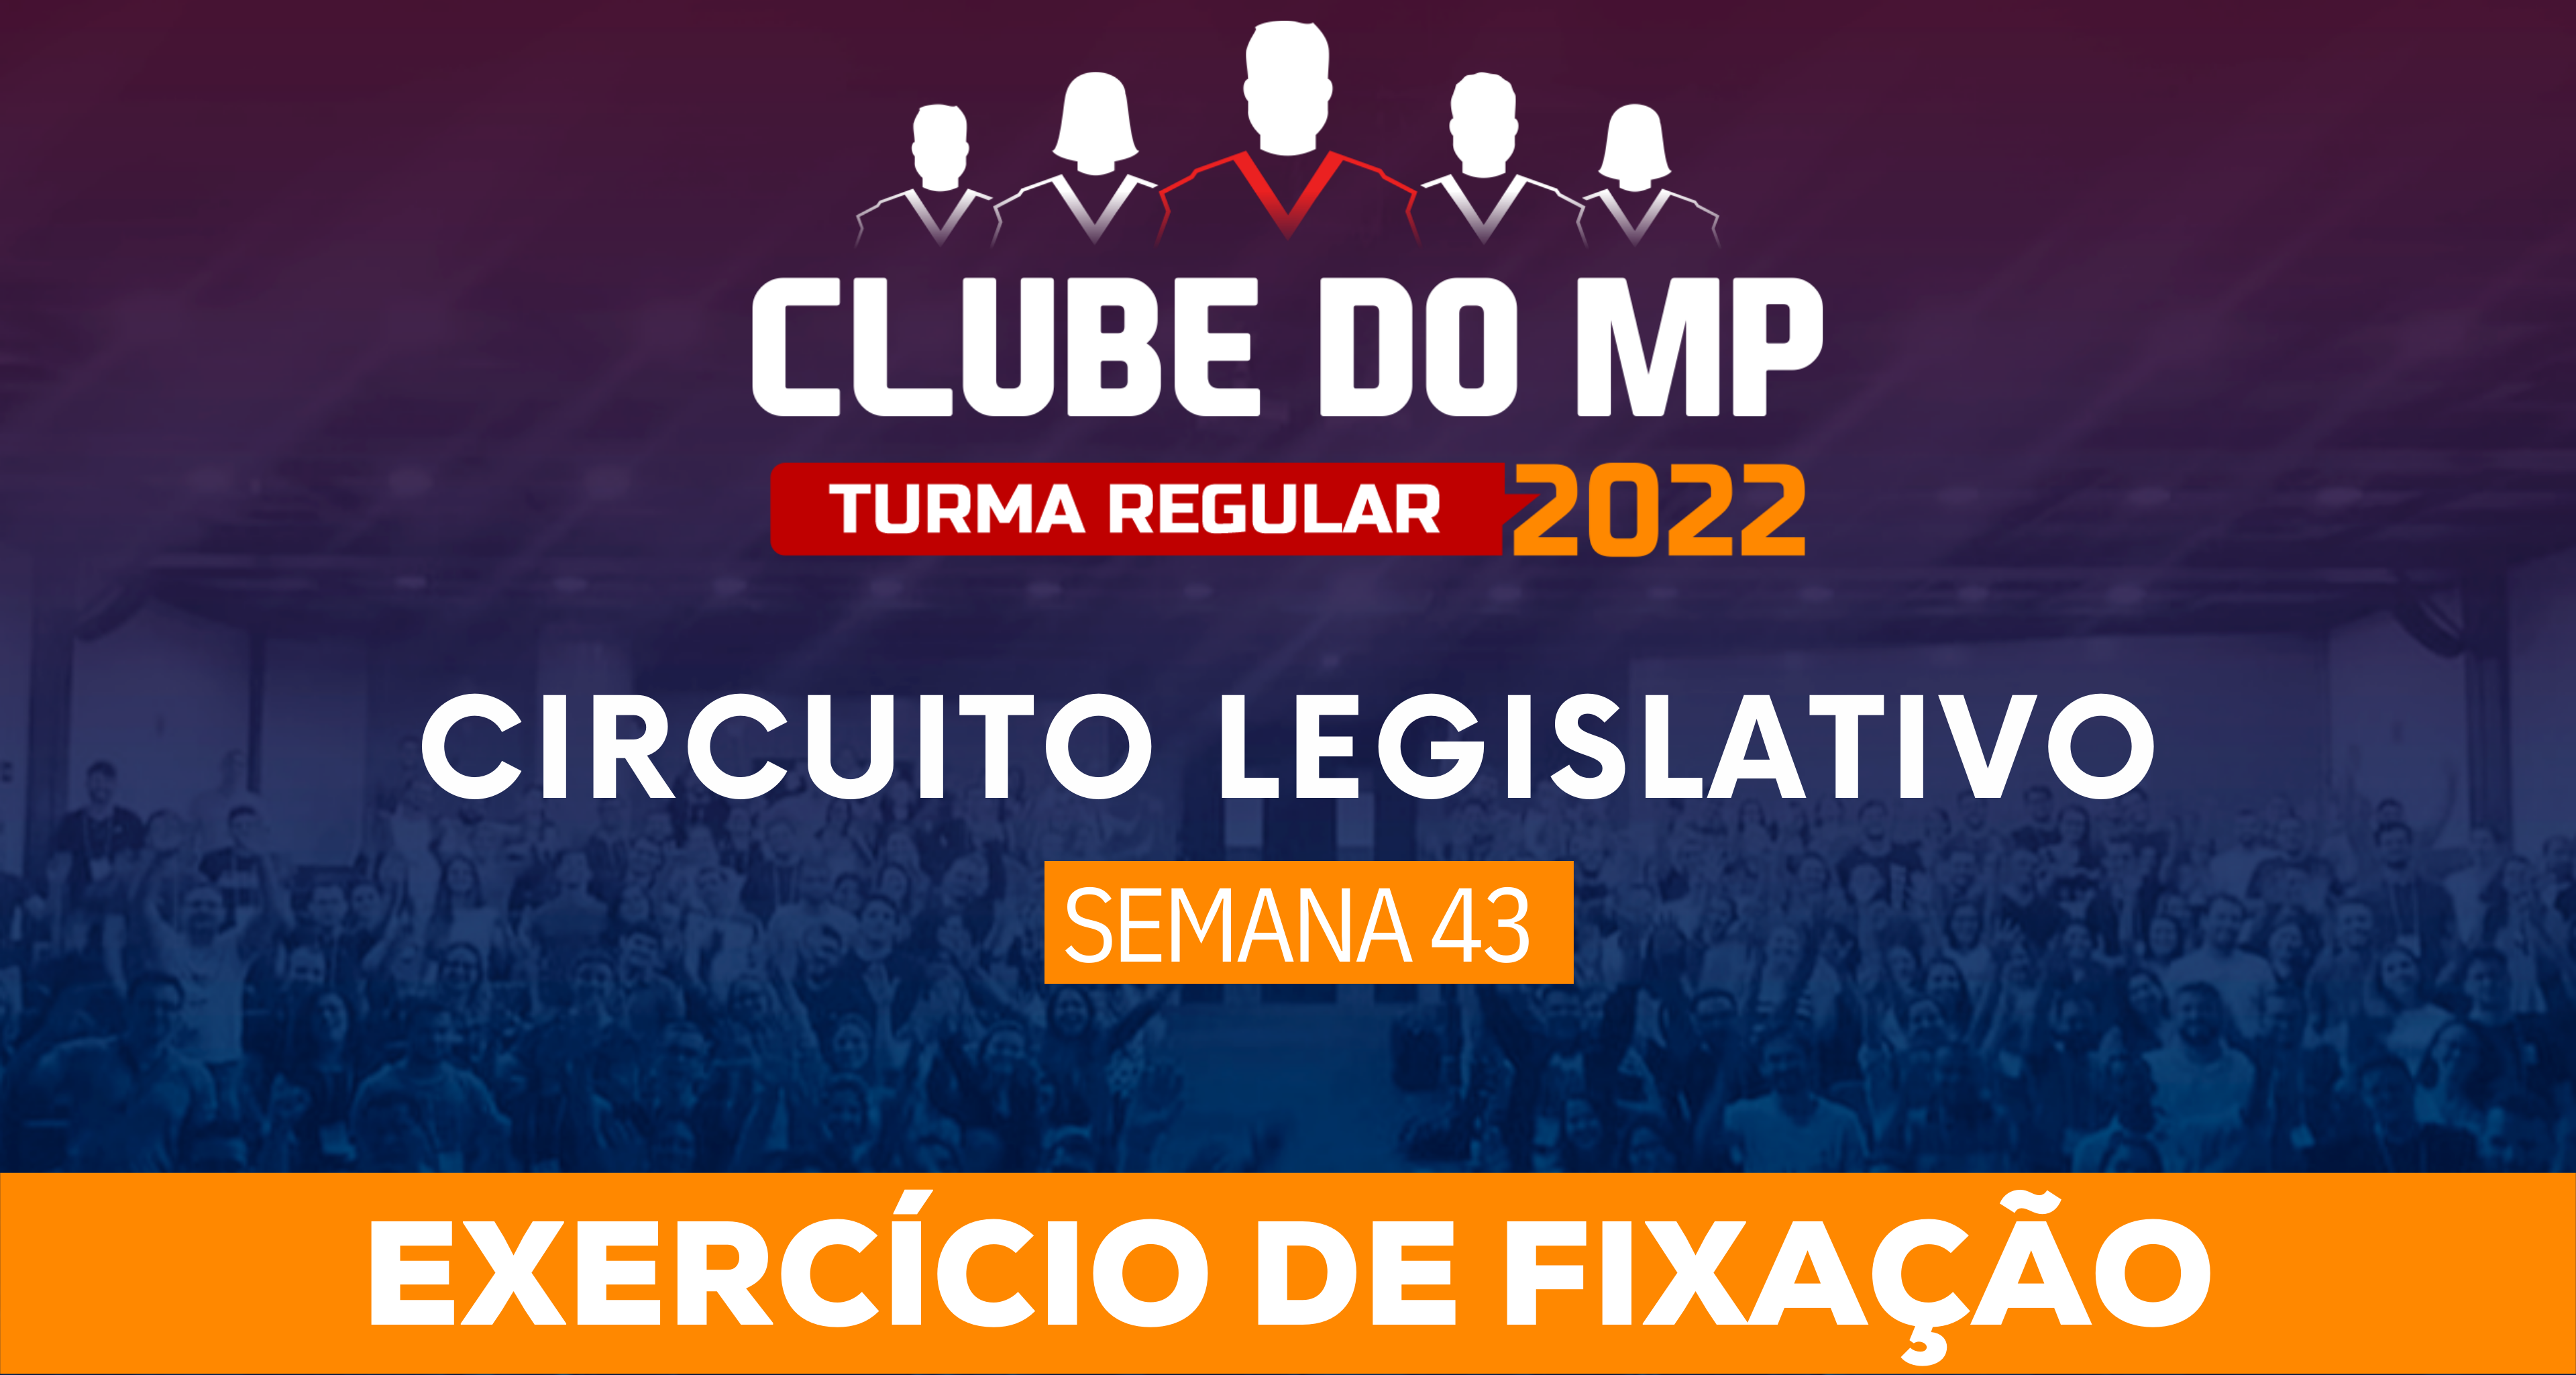 Circuito Legislativo 2022.1 (Clube do MP - Semana 43)